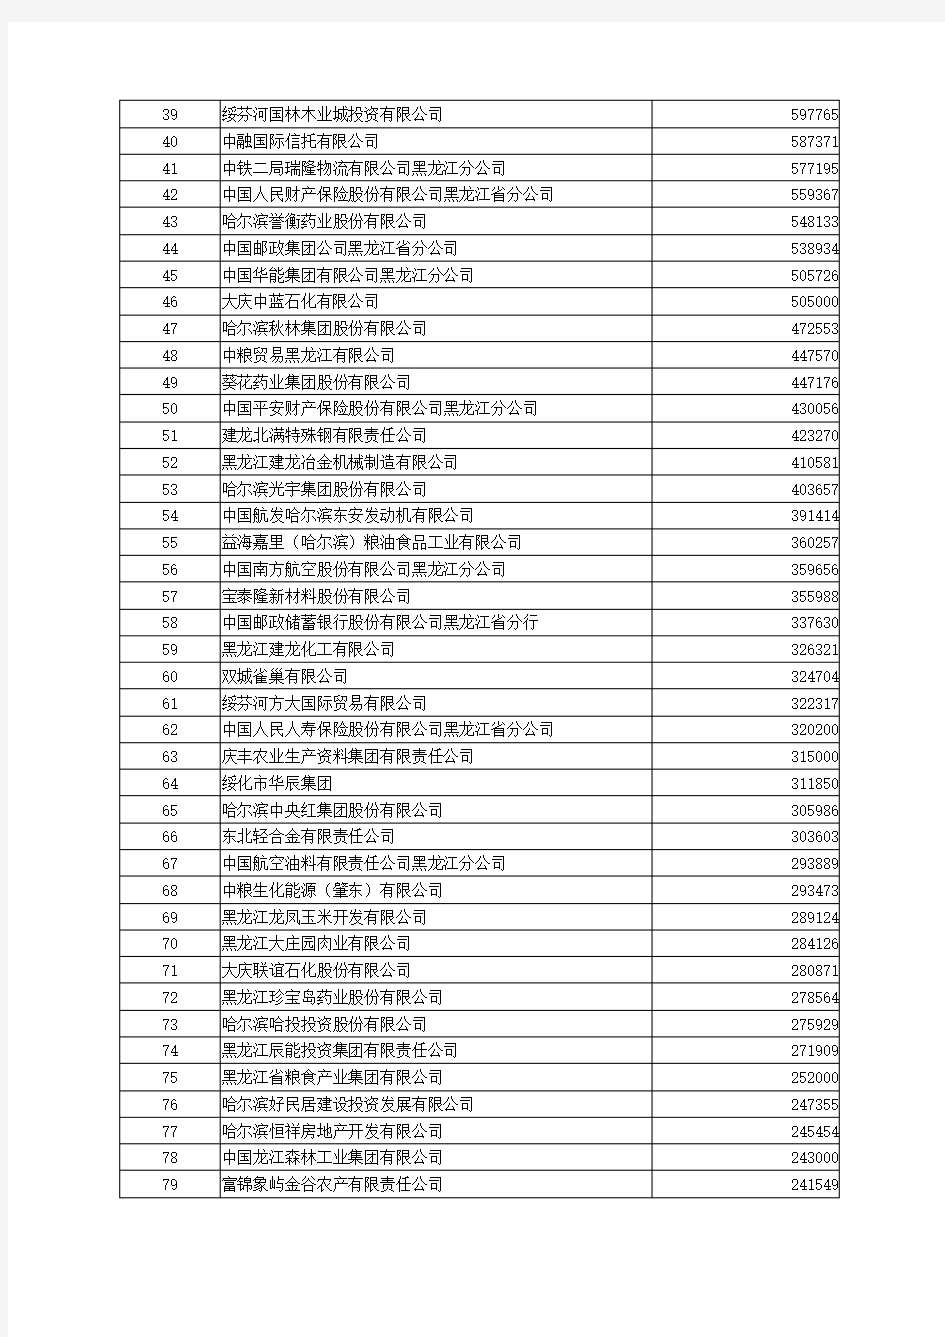 2019黑龙江企业100强公示榜单